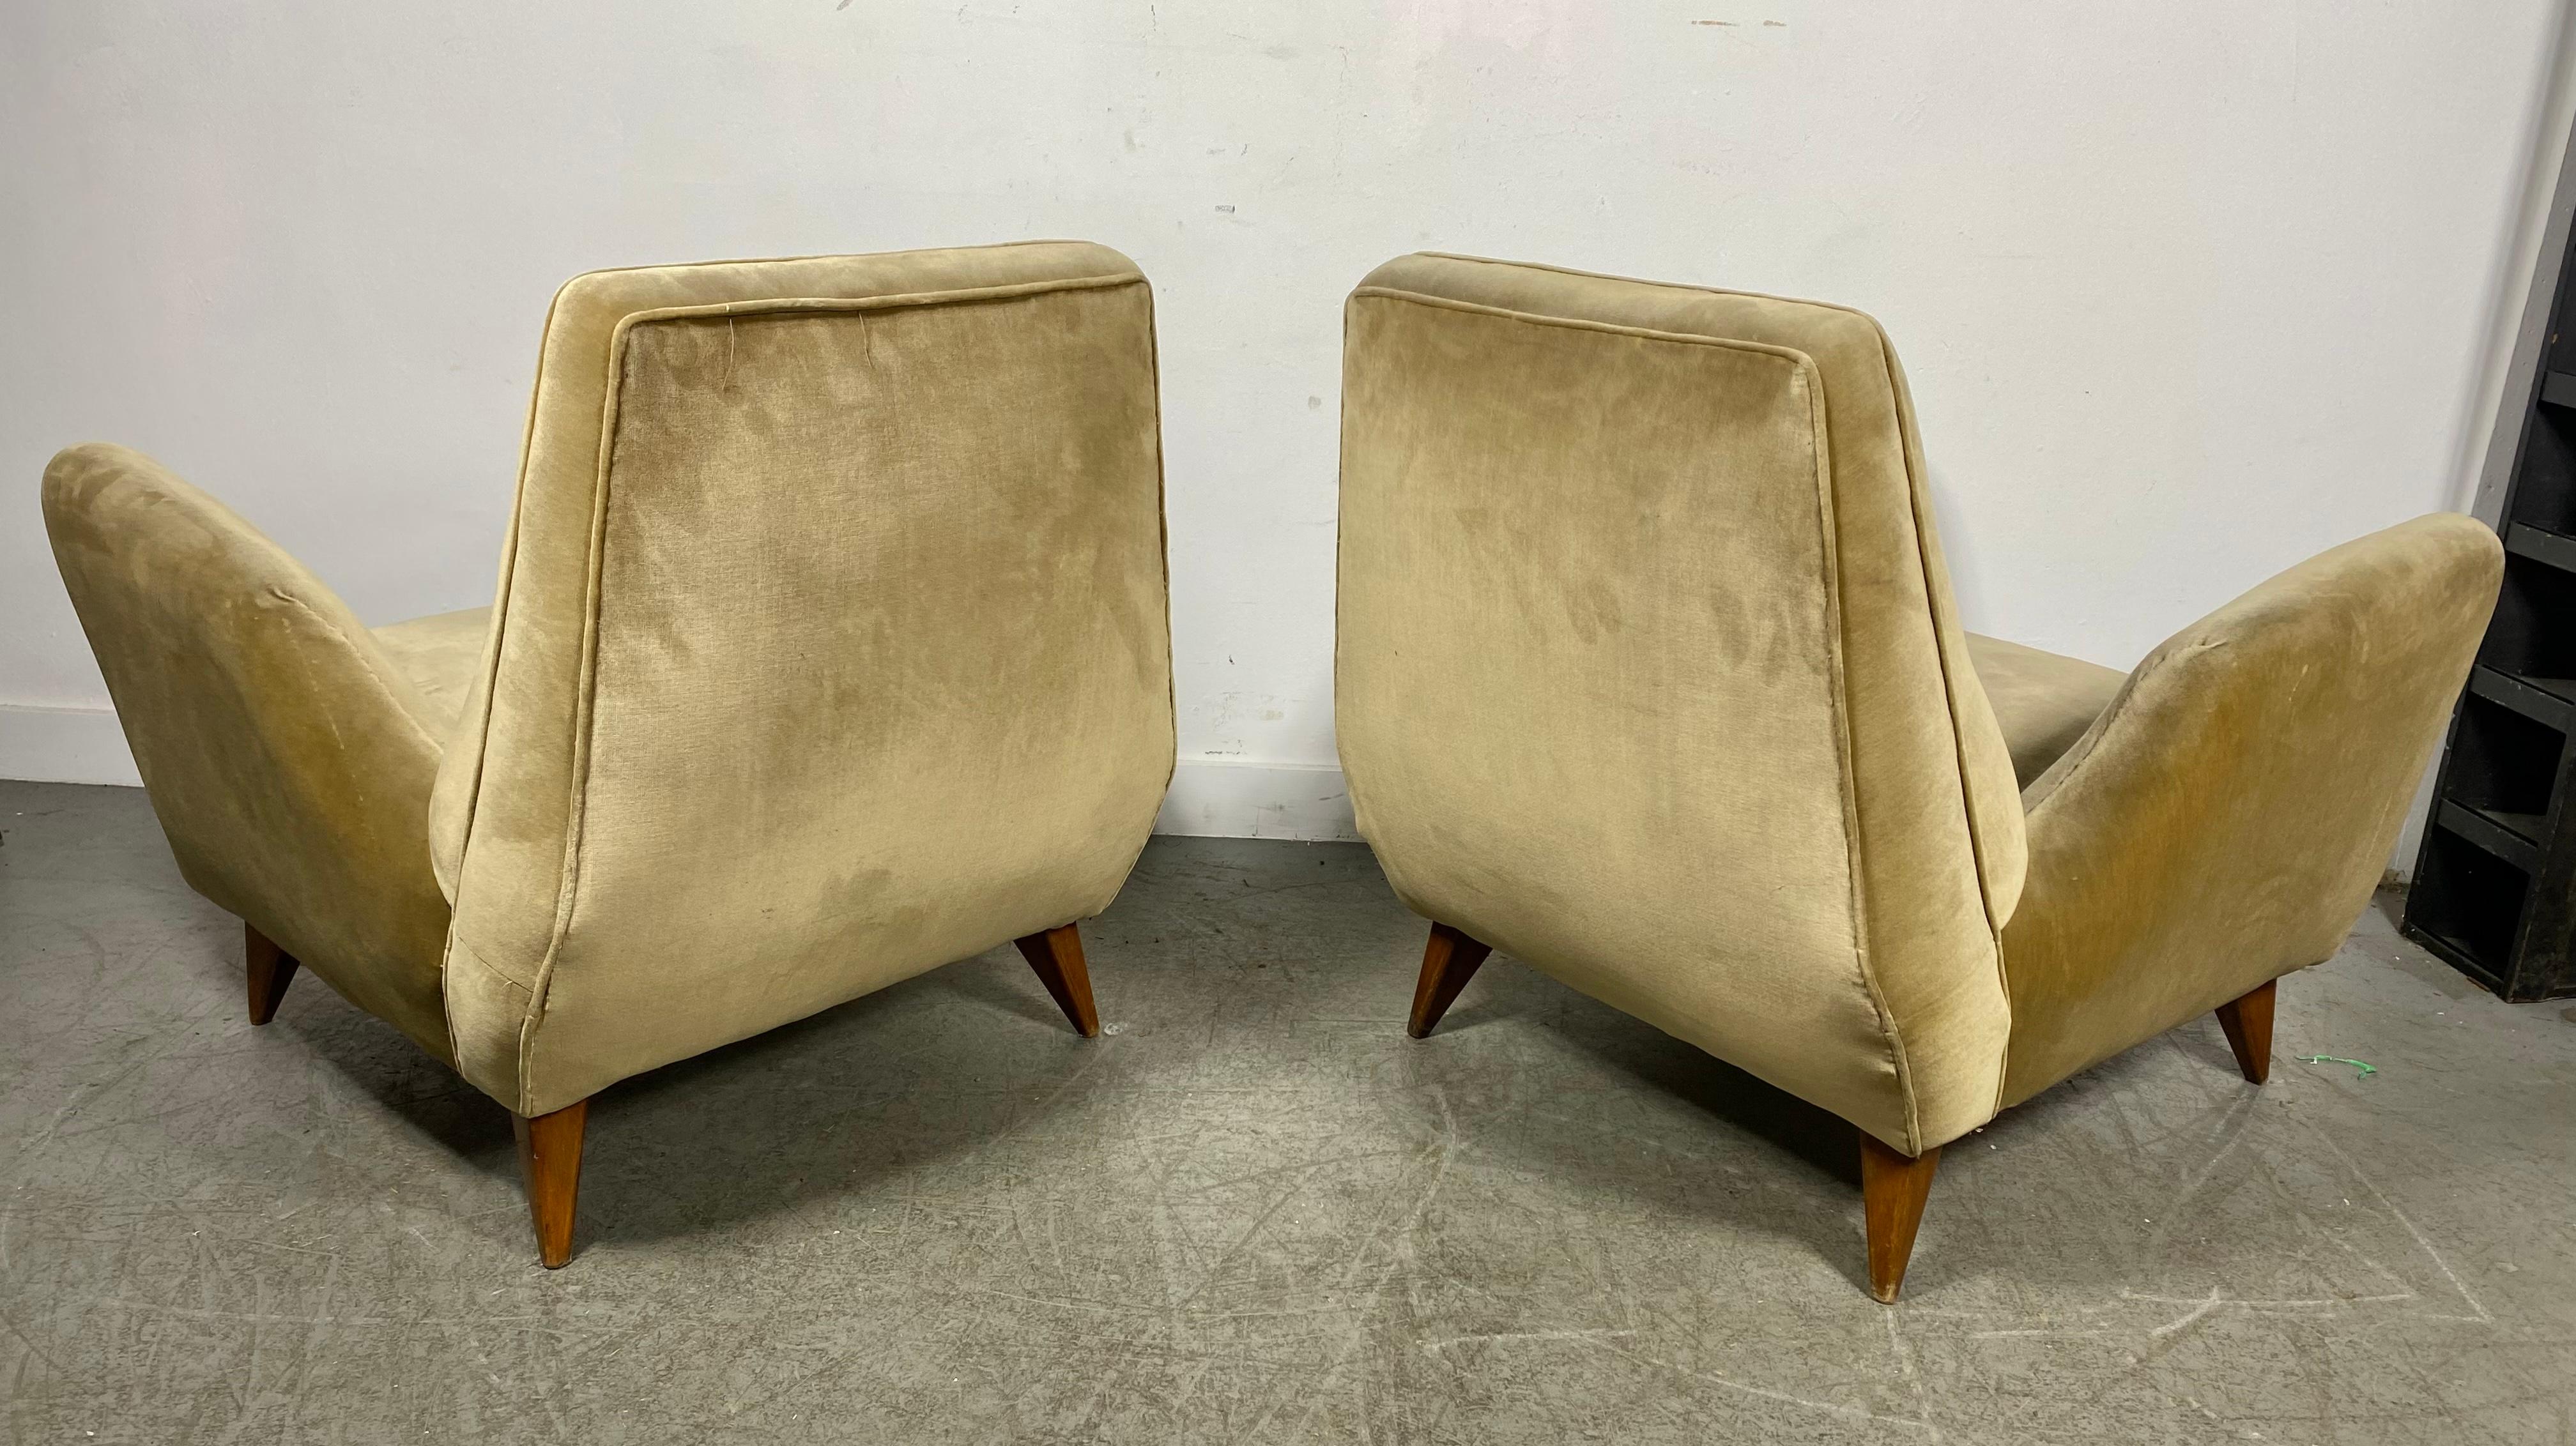 Stunning Pair Italian Modernist Lounge Chairs by Isa Bergamo & Att Gio Ponti 2